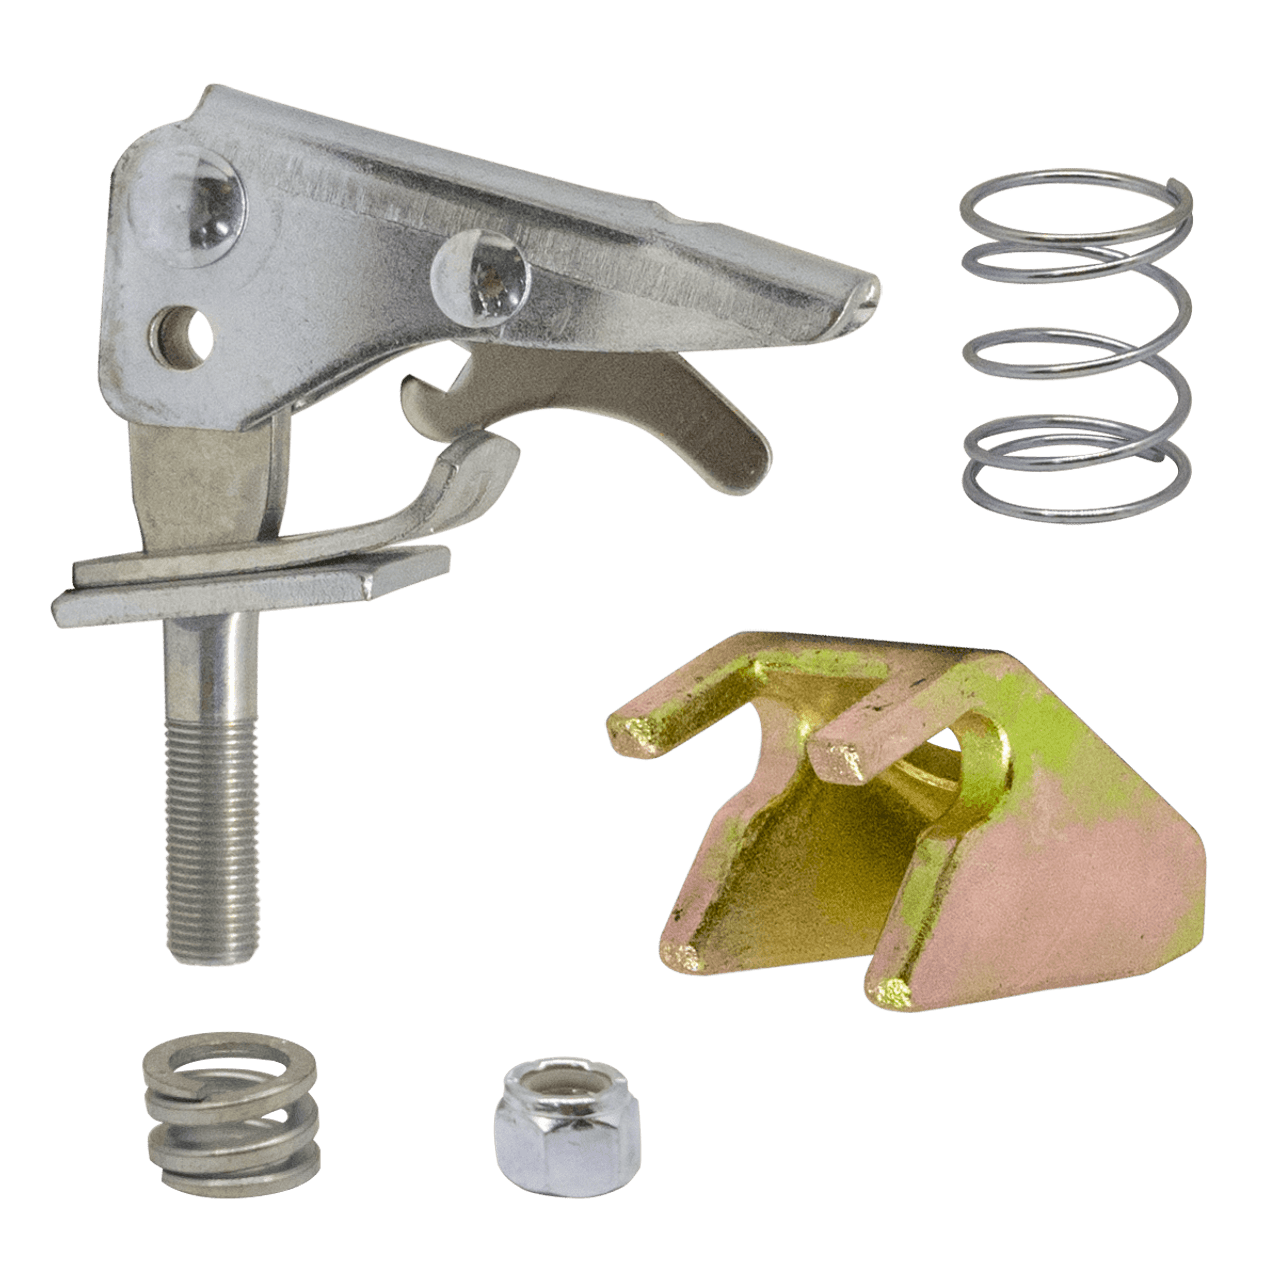 5696 --- Demco Coupler Repair Kit - Fits 2" Ball - Lever Lock